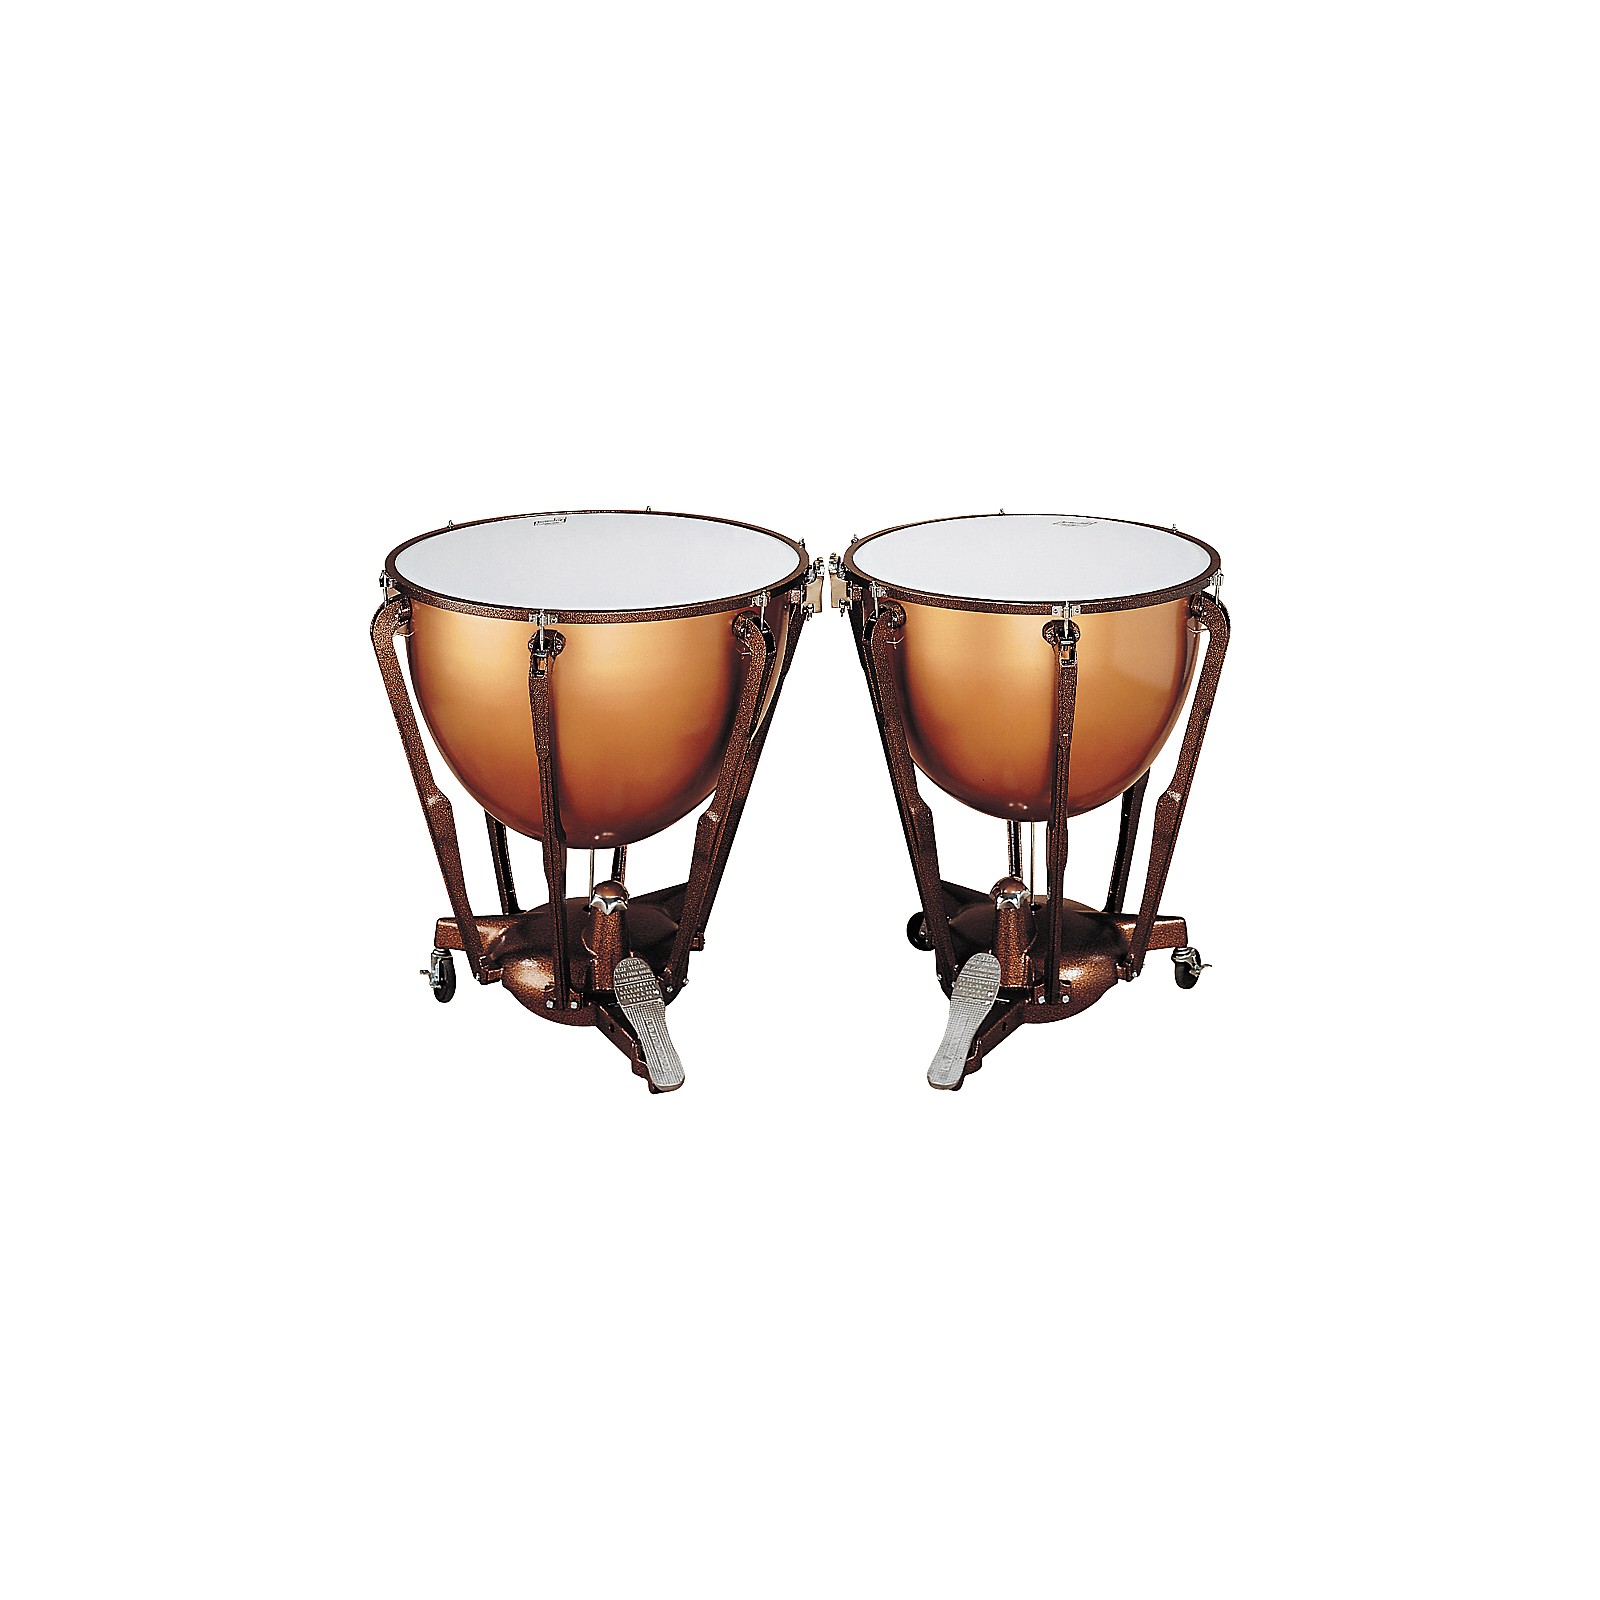 Timpani музыкальный инструмент